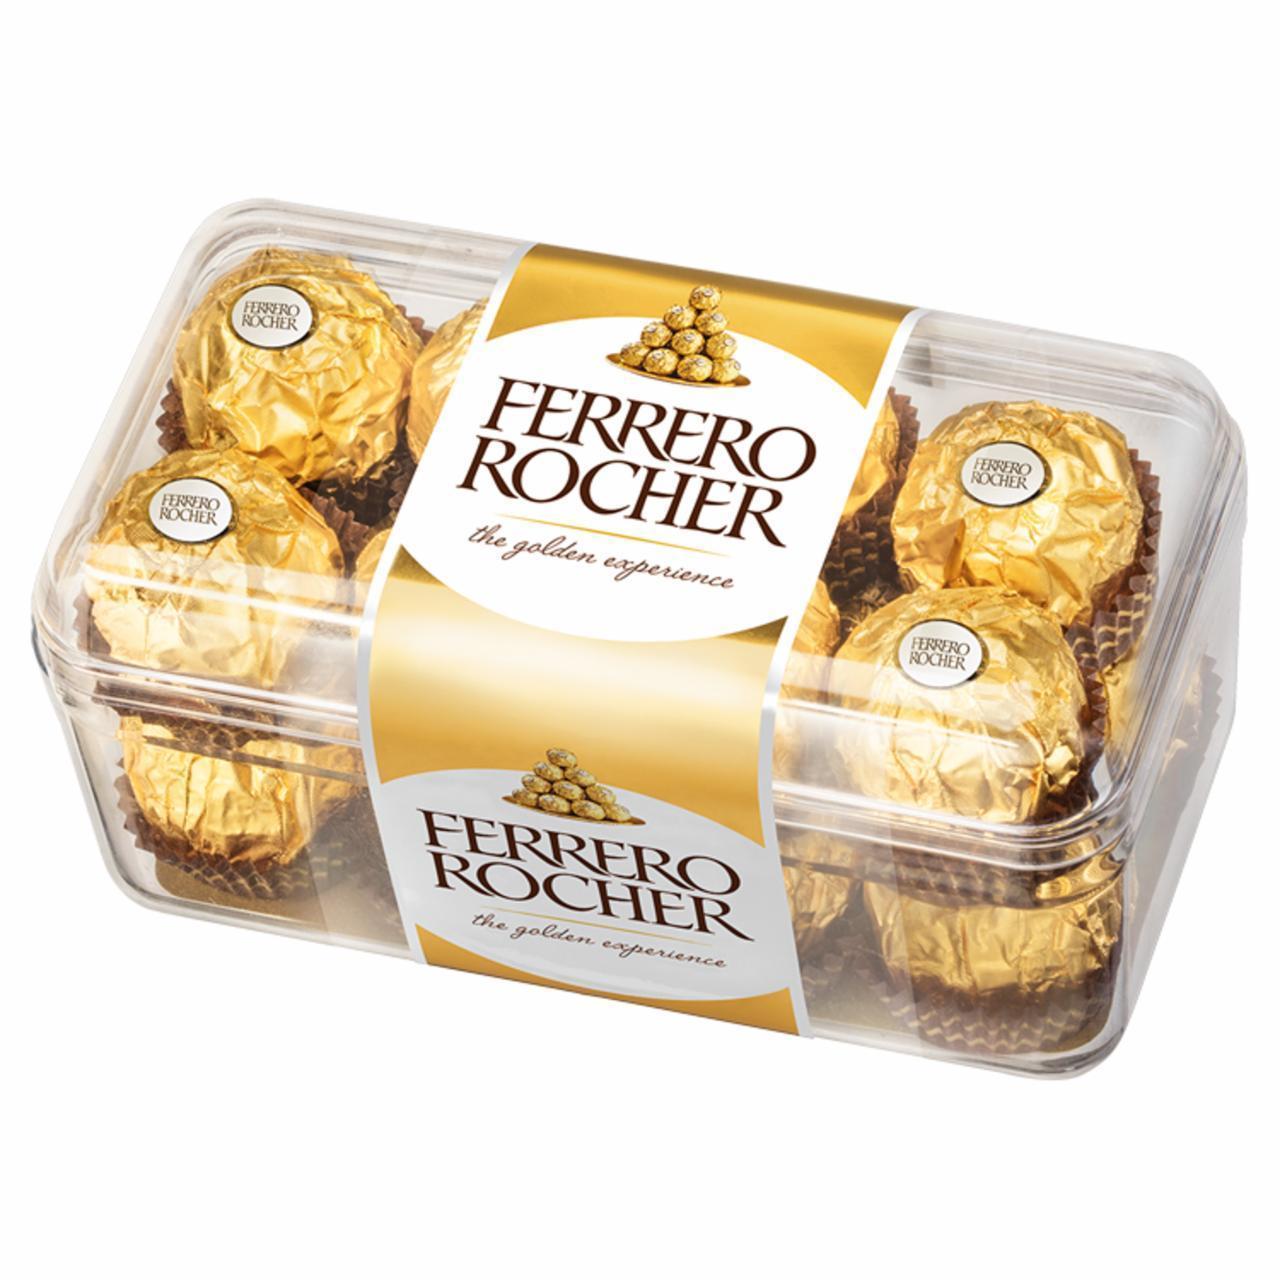 Фото - конфеты набор Ферреро Роше Rocher Ferrero Collection